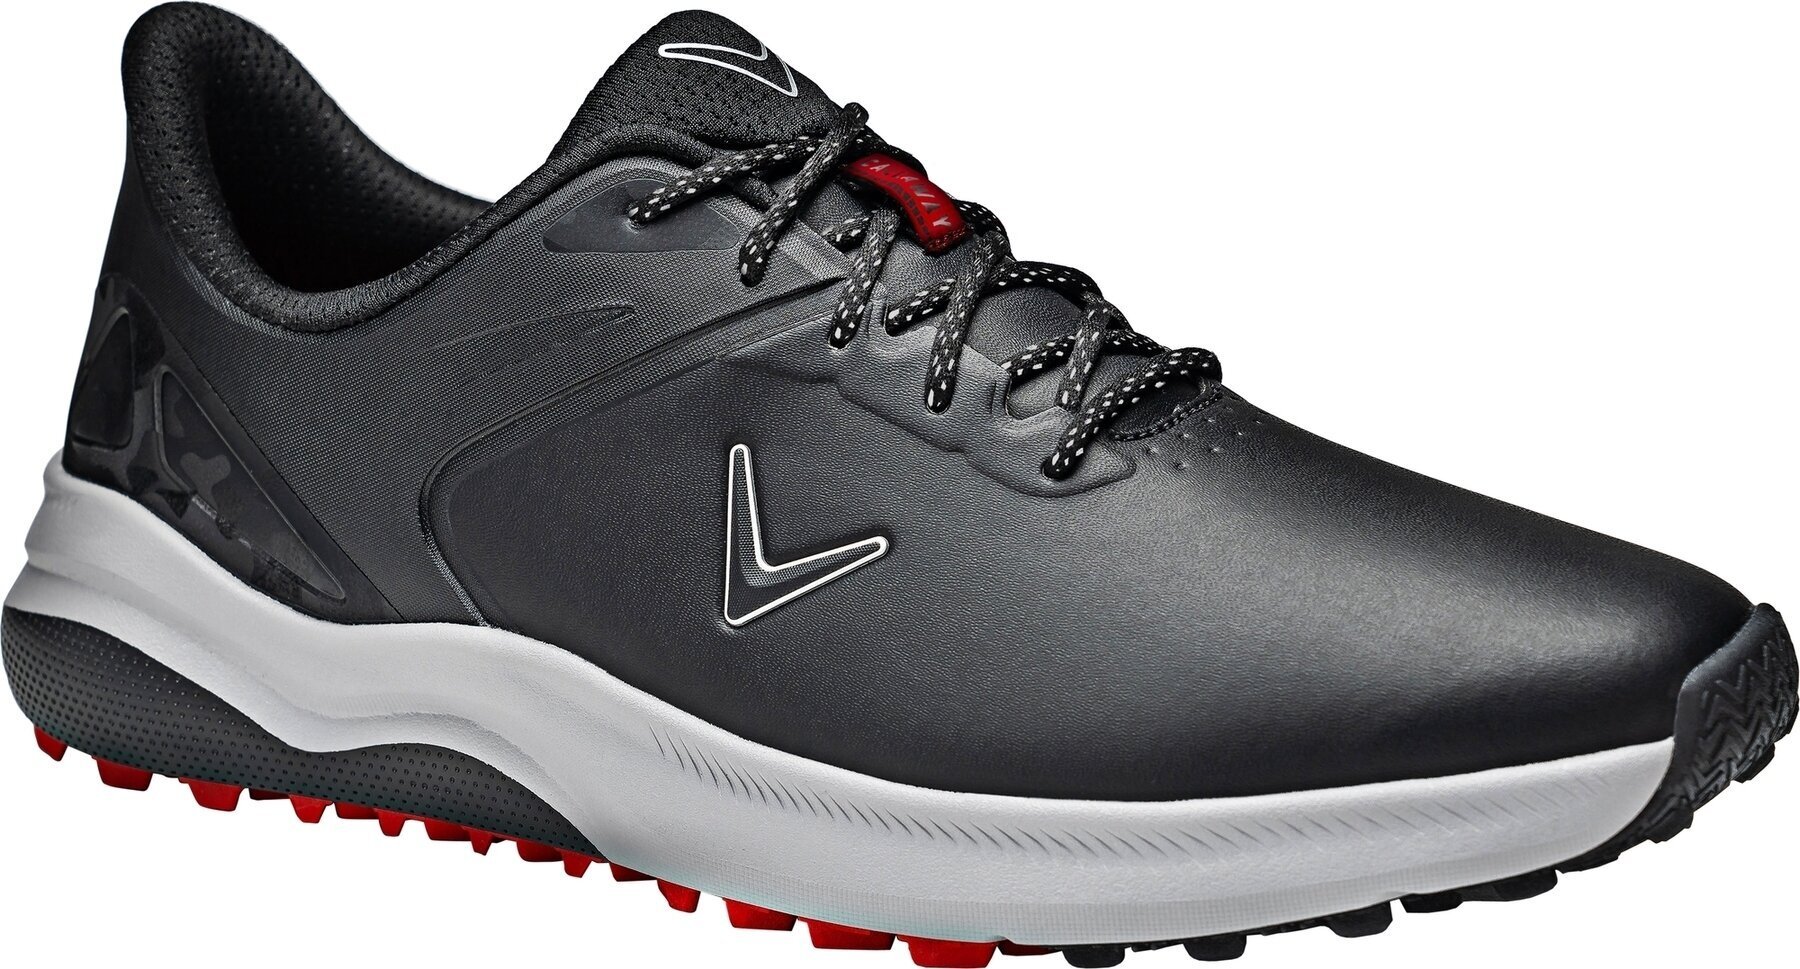 Ανδρικό Παπούτσι για Γκολφ Callaway Lazer Mens Golf Shoes Μαύρο 46